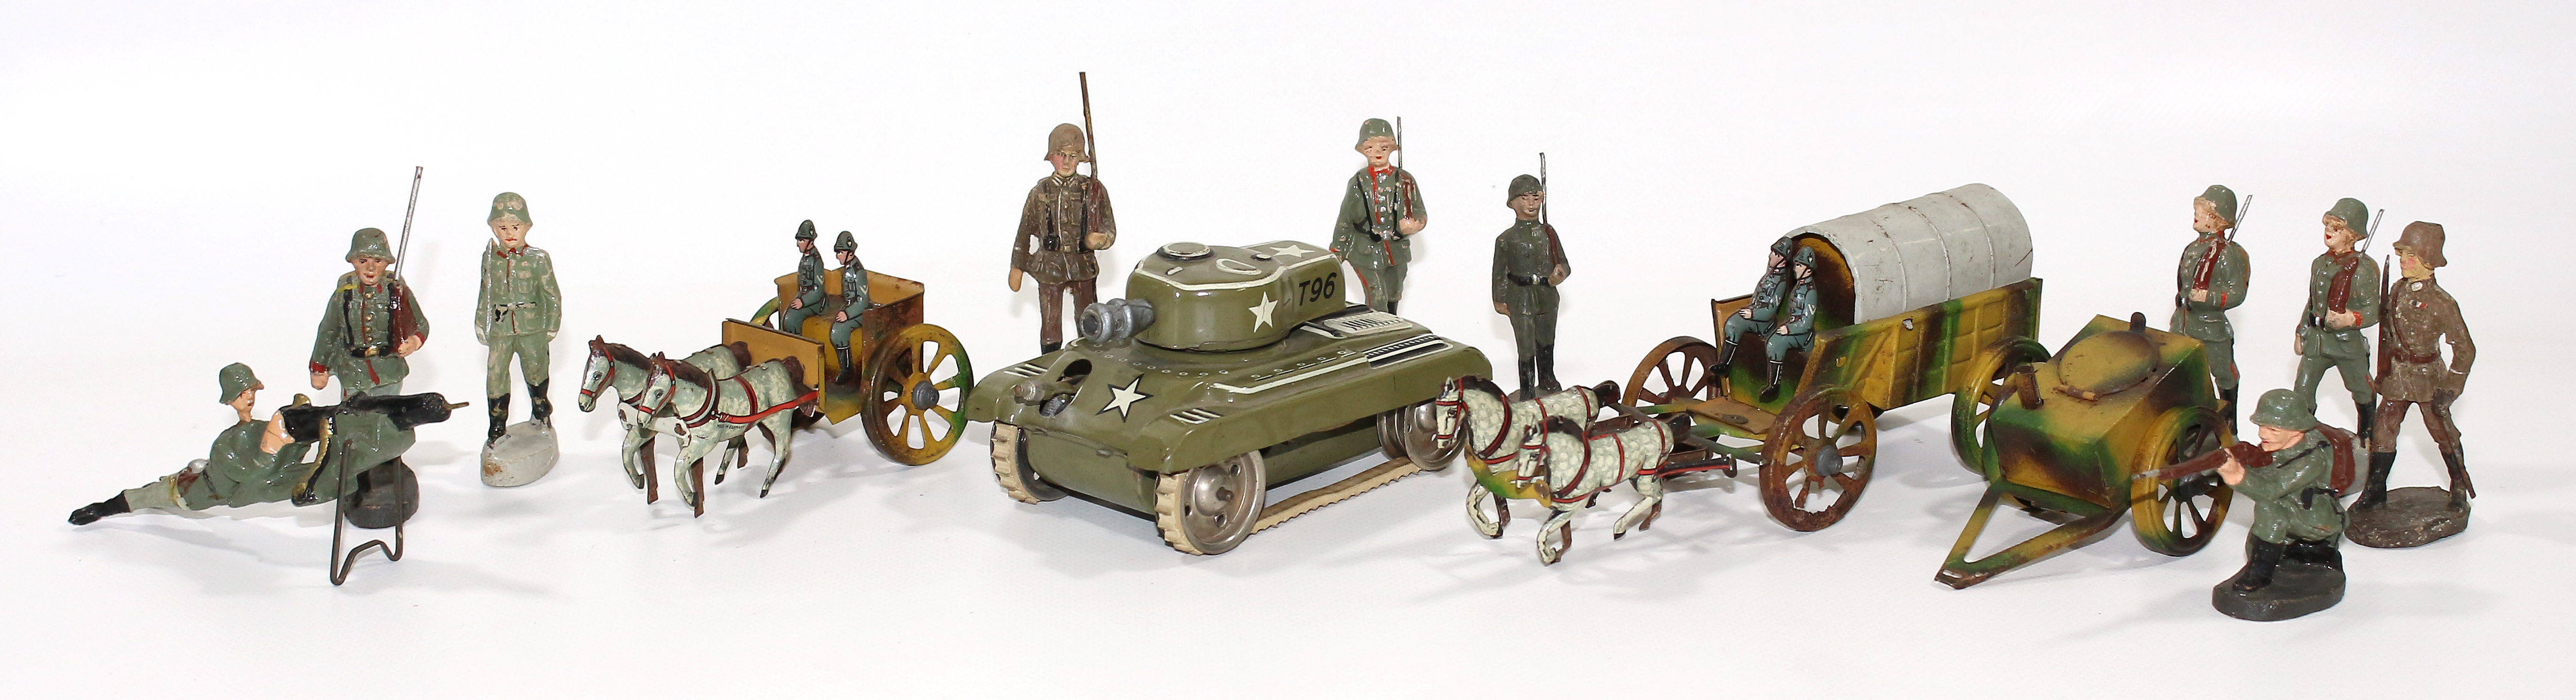 Militärisches Spielzeug | Bild Nr.1